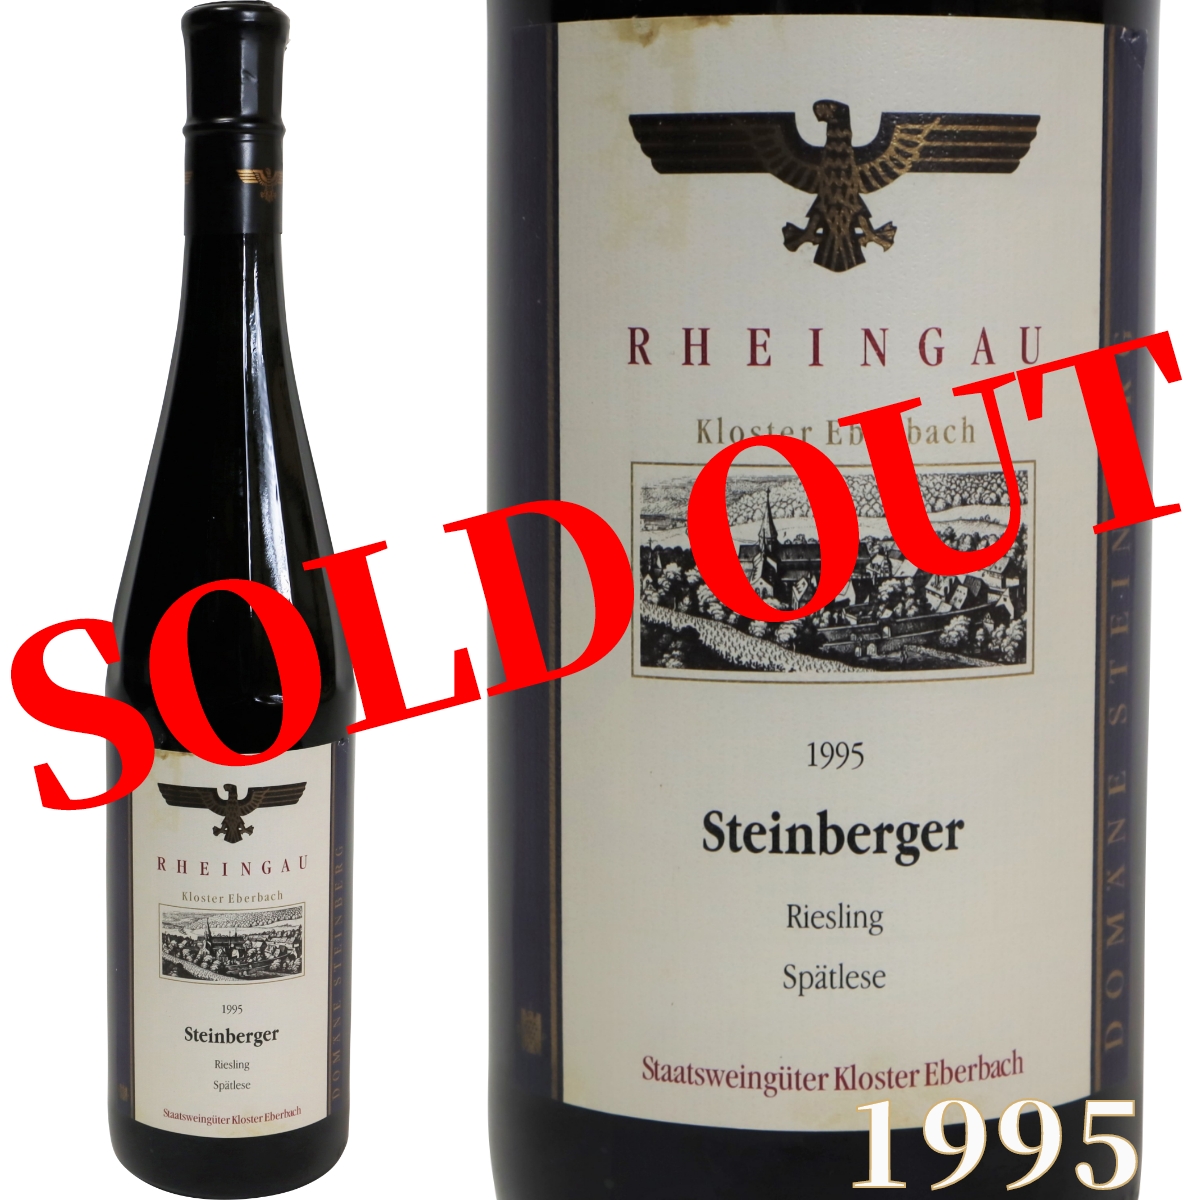 〈オールドヴィンテージワイン〉 シュタインベルガー 白ワイン リースリング ラインガウ 1995年 750ml STEINBERGER Riesling 1995 奉呈 高級ワイン シュペトレーゼ 御祝 ホームパーティー 誕生日 G-9 バレンタイン wine プレゼント ヴィンテージ 贈り物 ビンテージ 最大49%OFFクーポン ギフト ドイツワイン